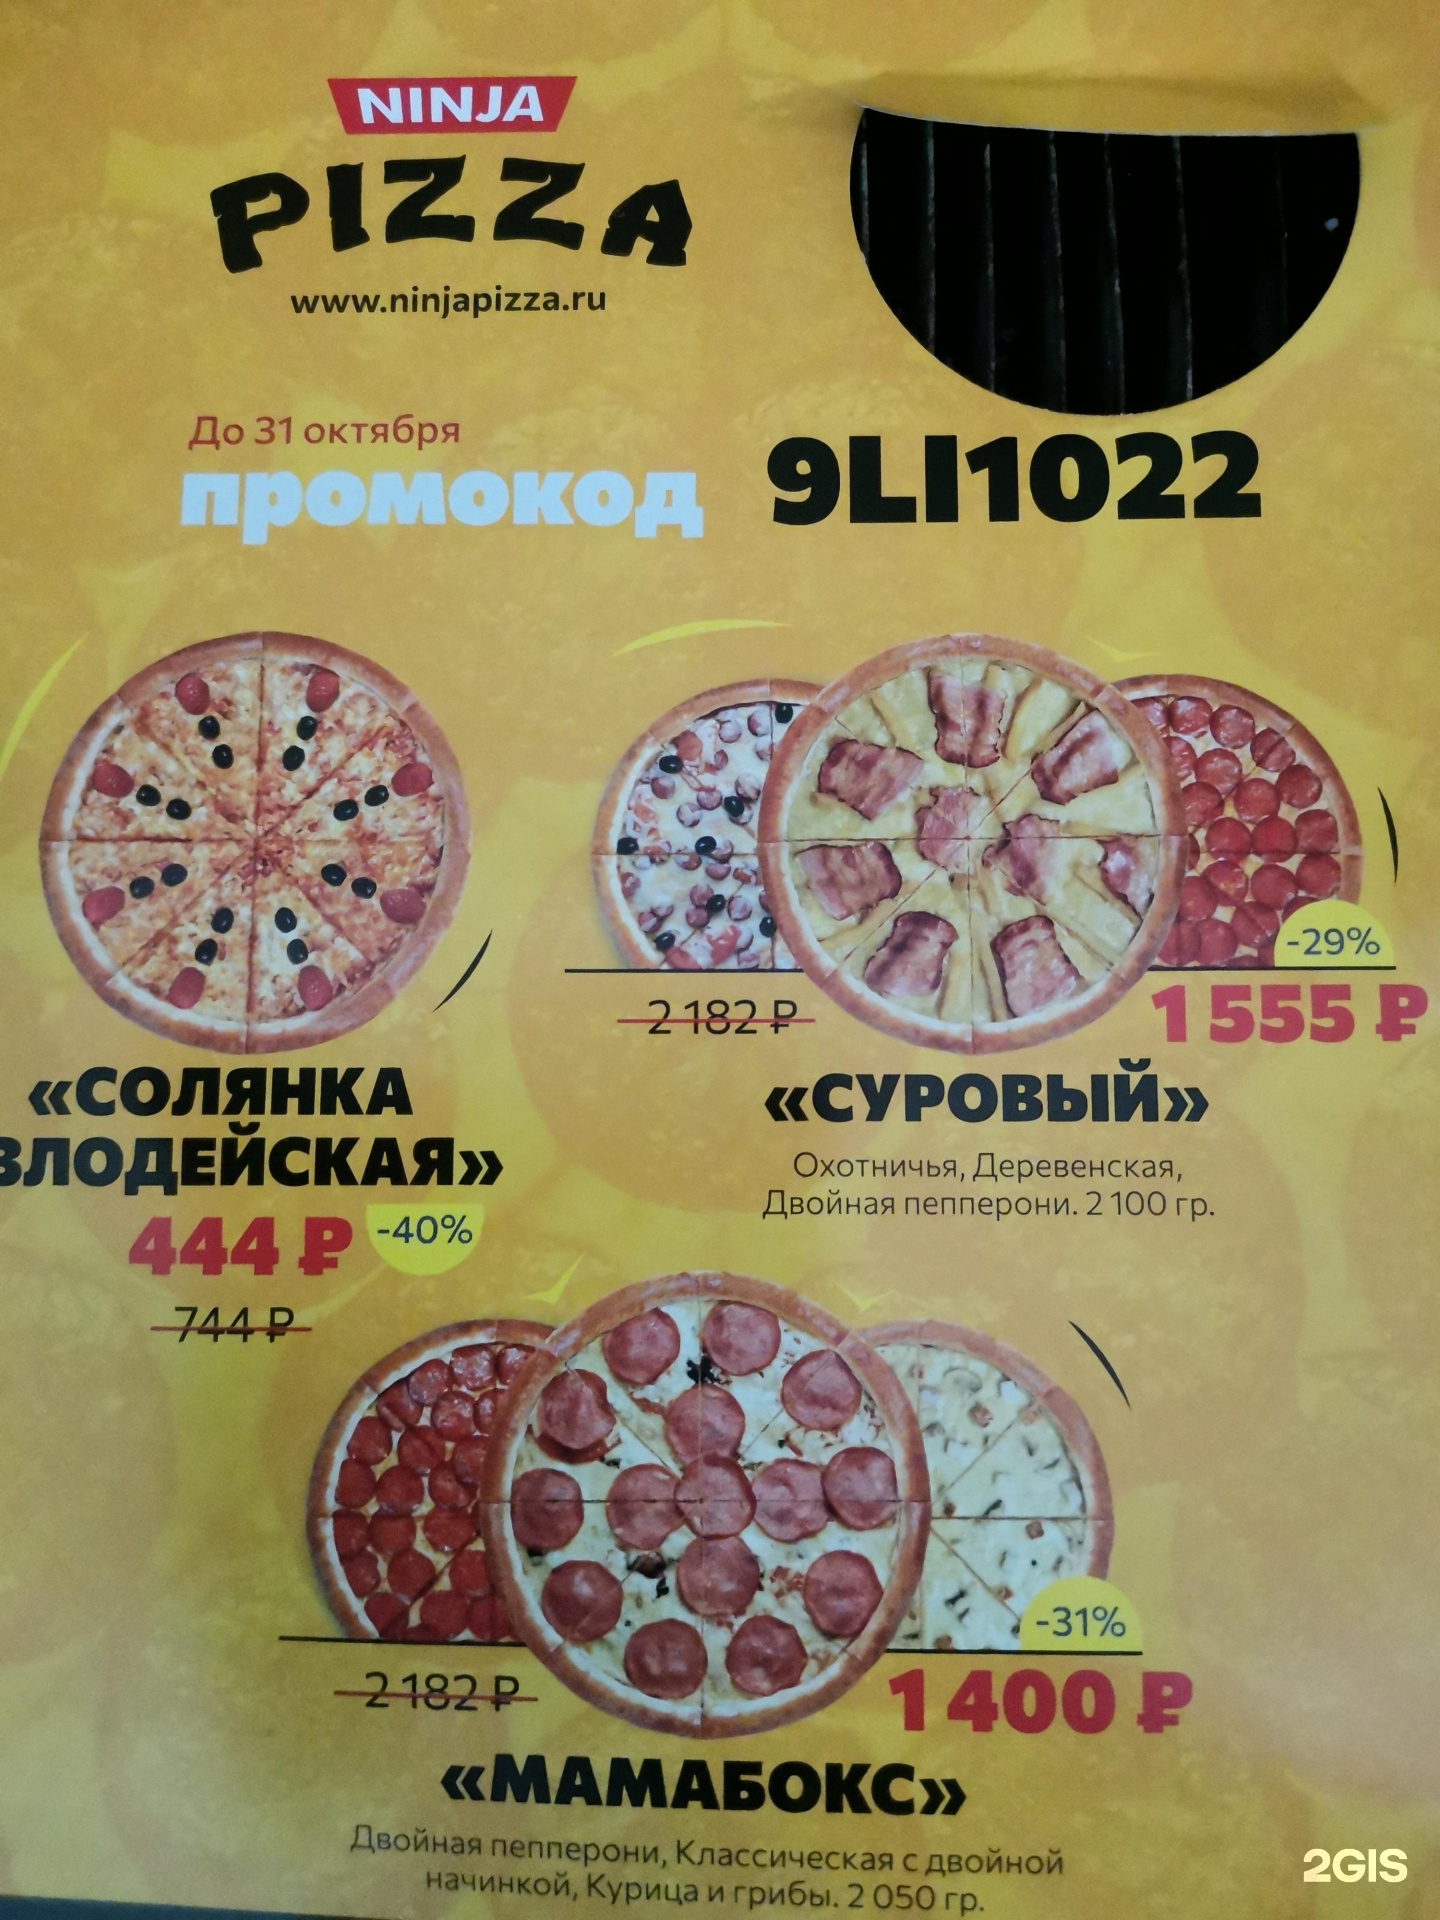 лучшая пицца в красноярске рейтинг с доставкой фото 65